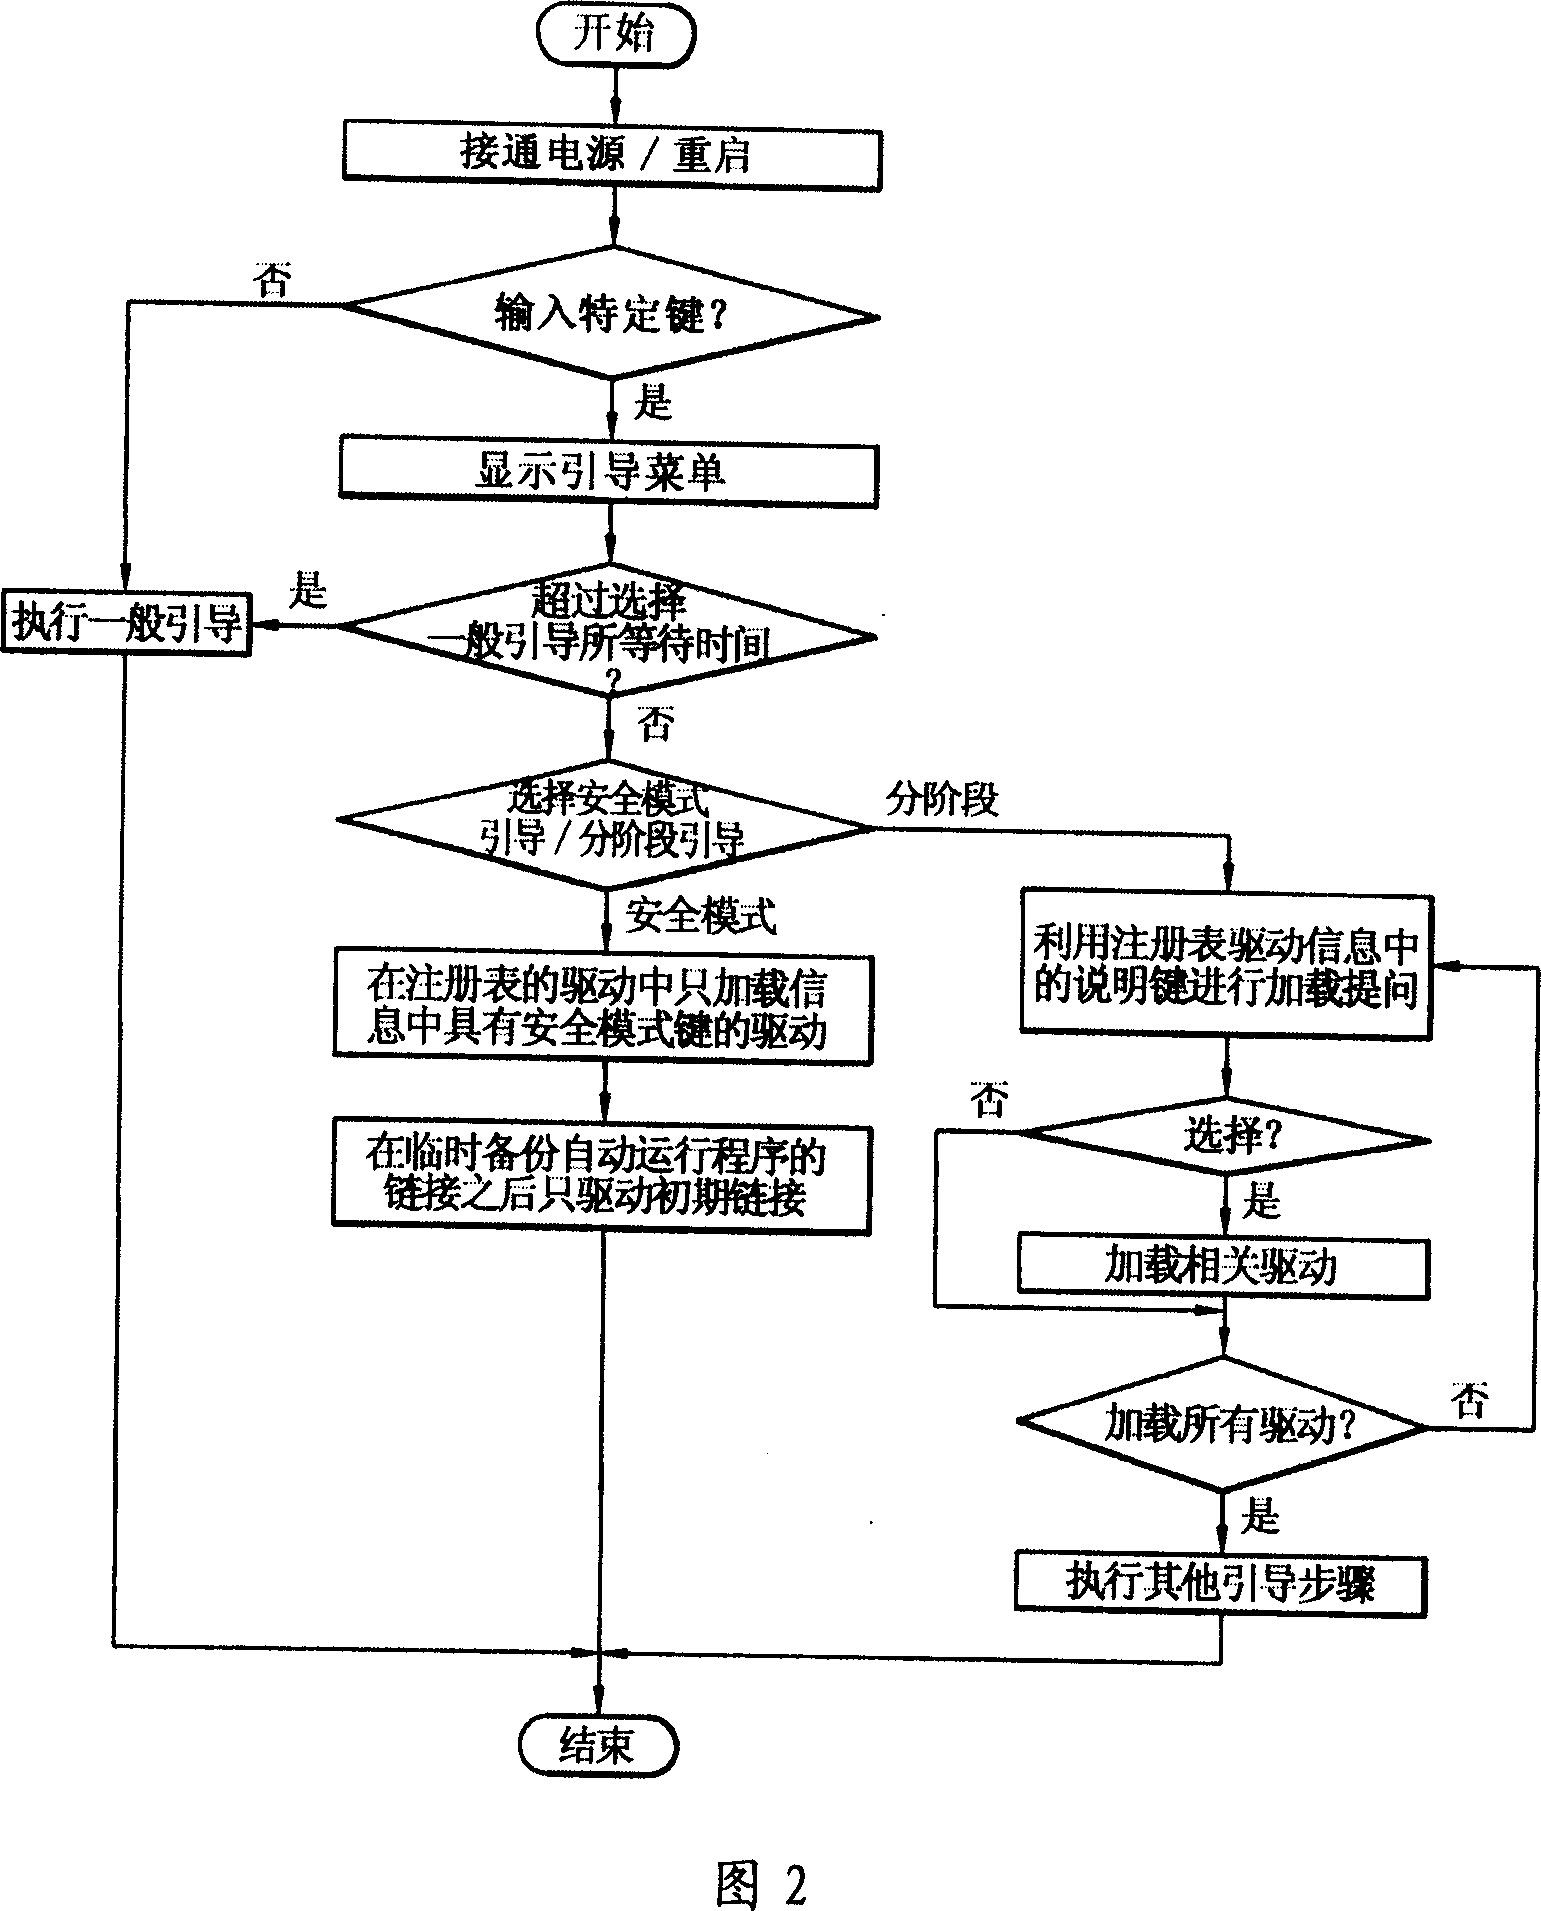 Portable information terminal guiding method